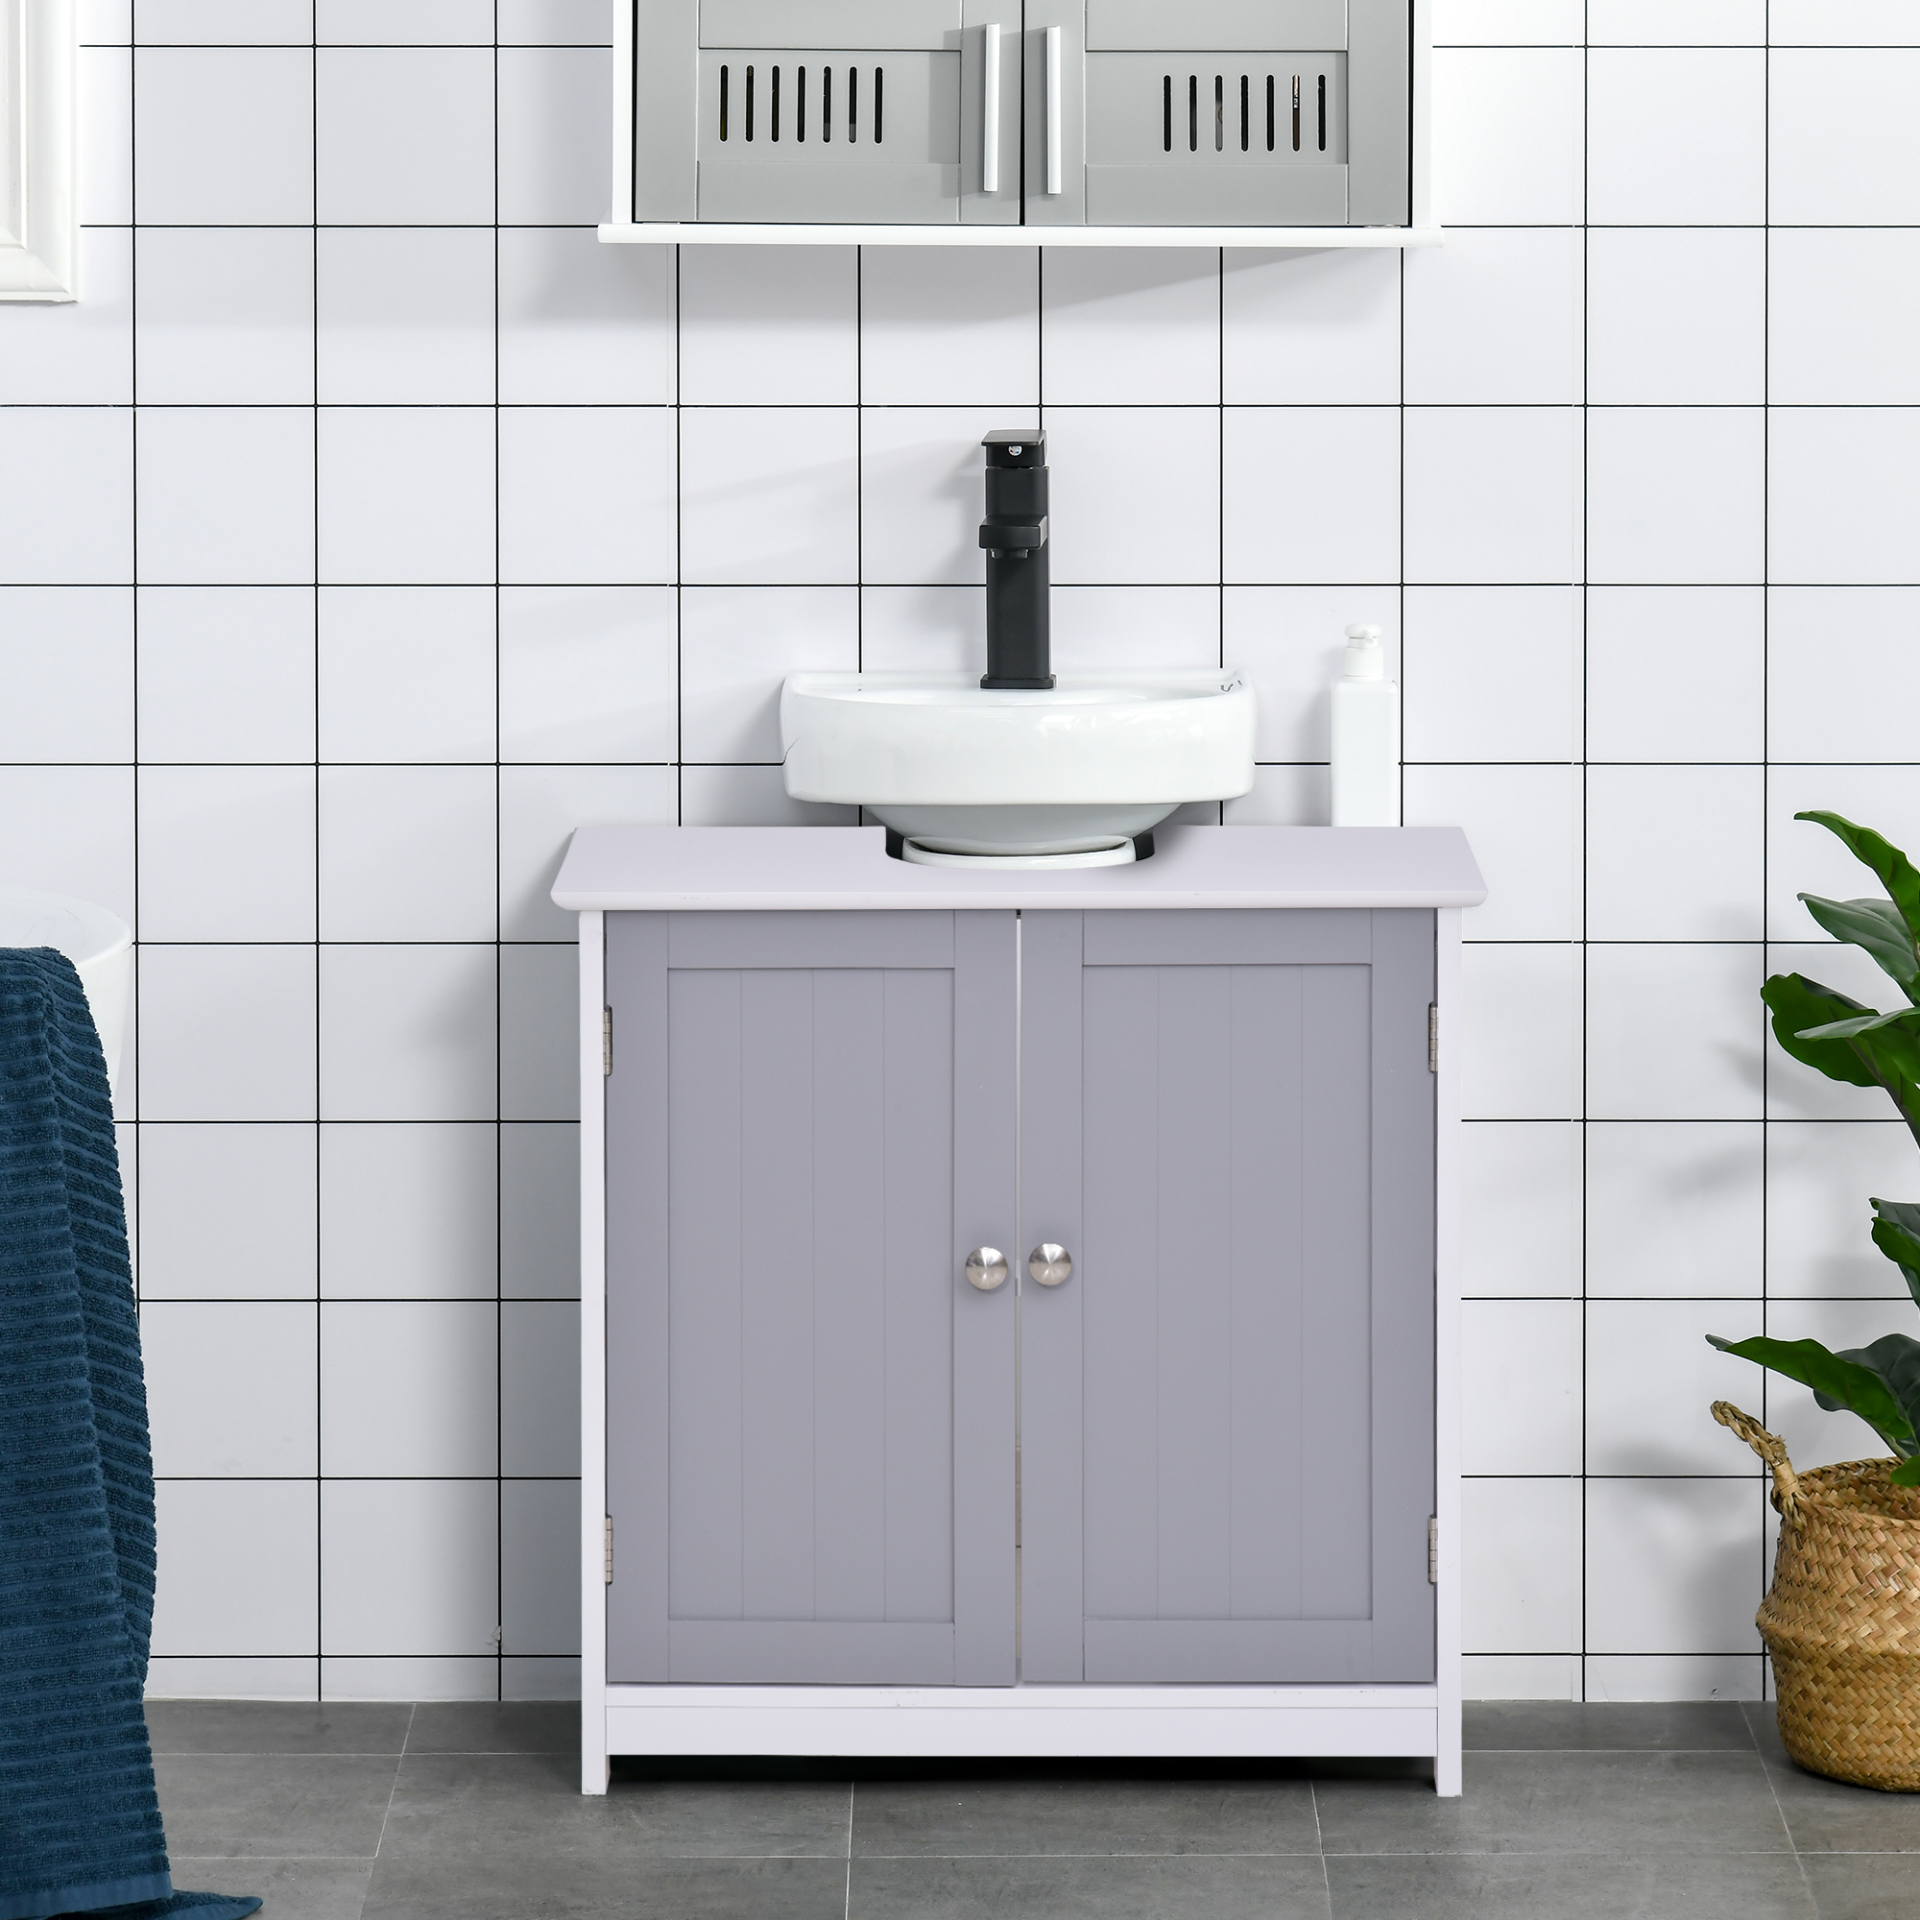 kleankin 60x60cm Under-Sink Storage Cabinet w/ Adjustable Shelf Handles Drain Hole Bathroom Cabinet Space Saver Organizer White and Grey